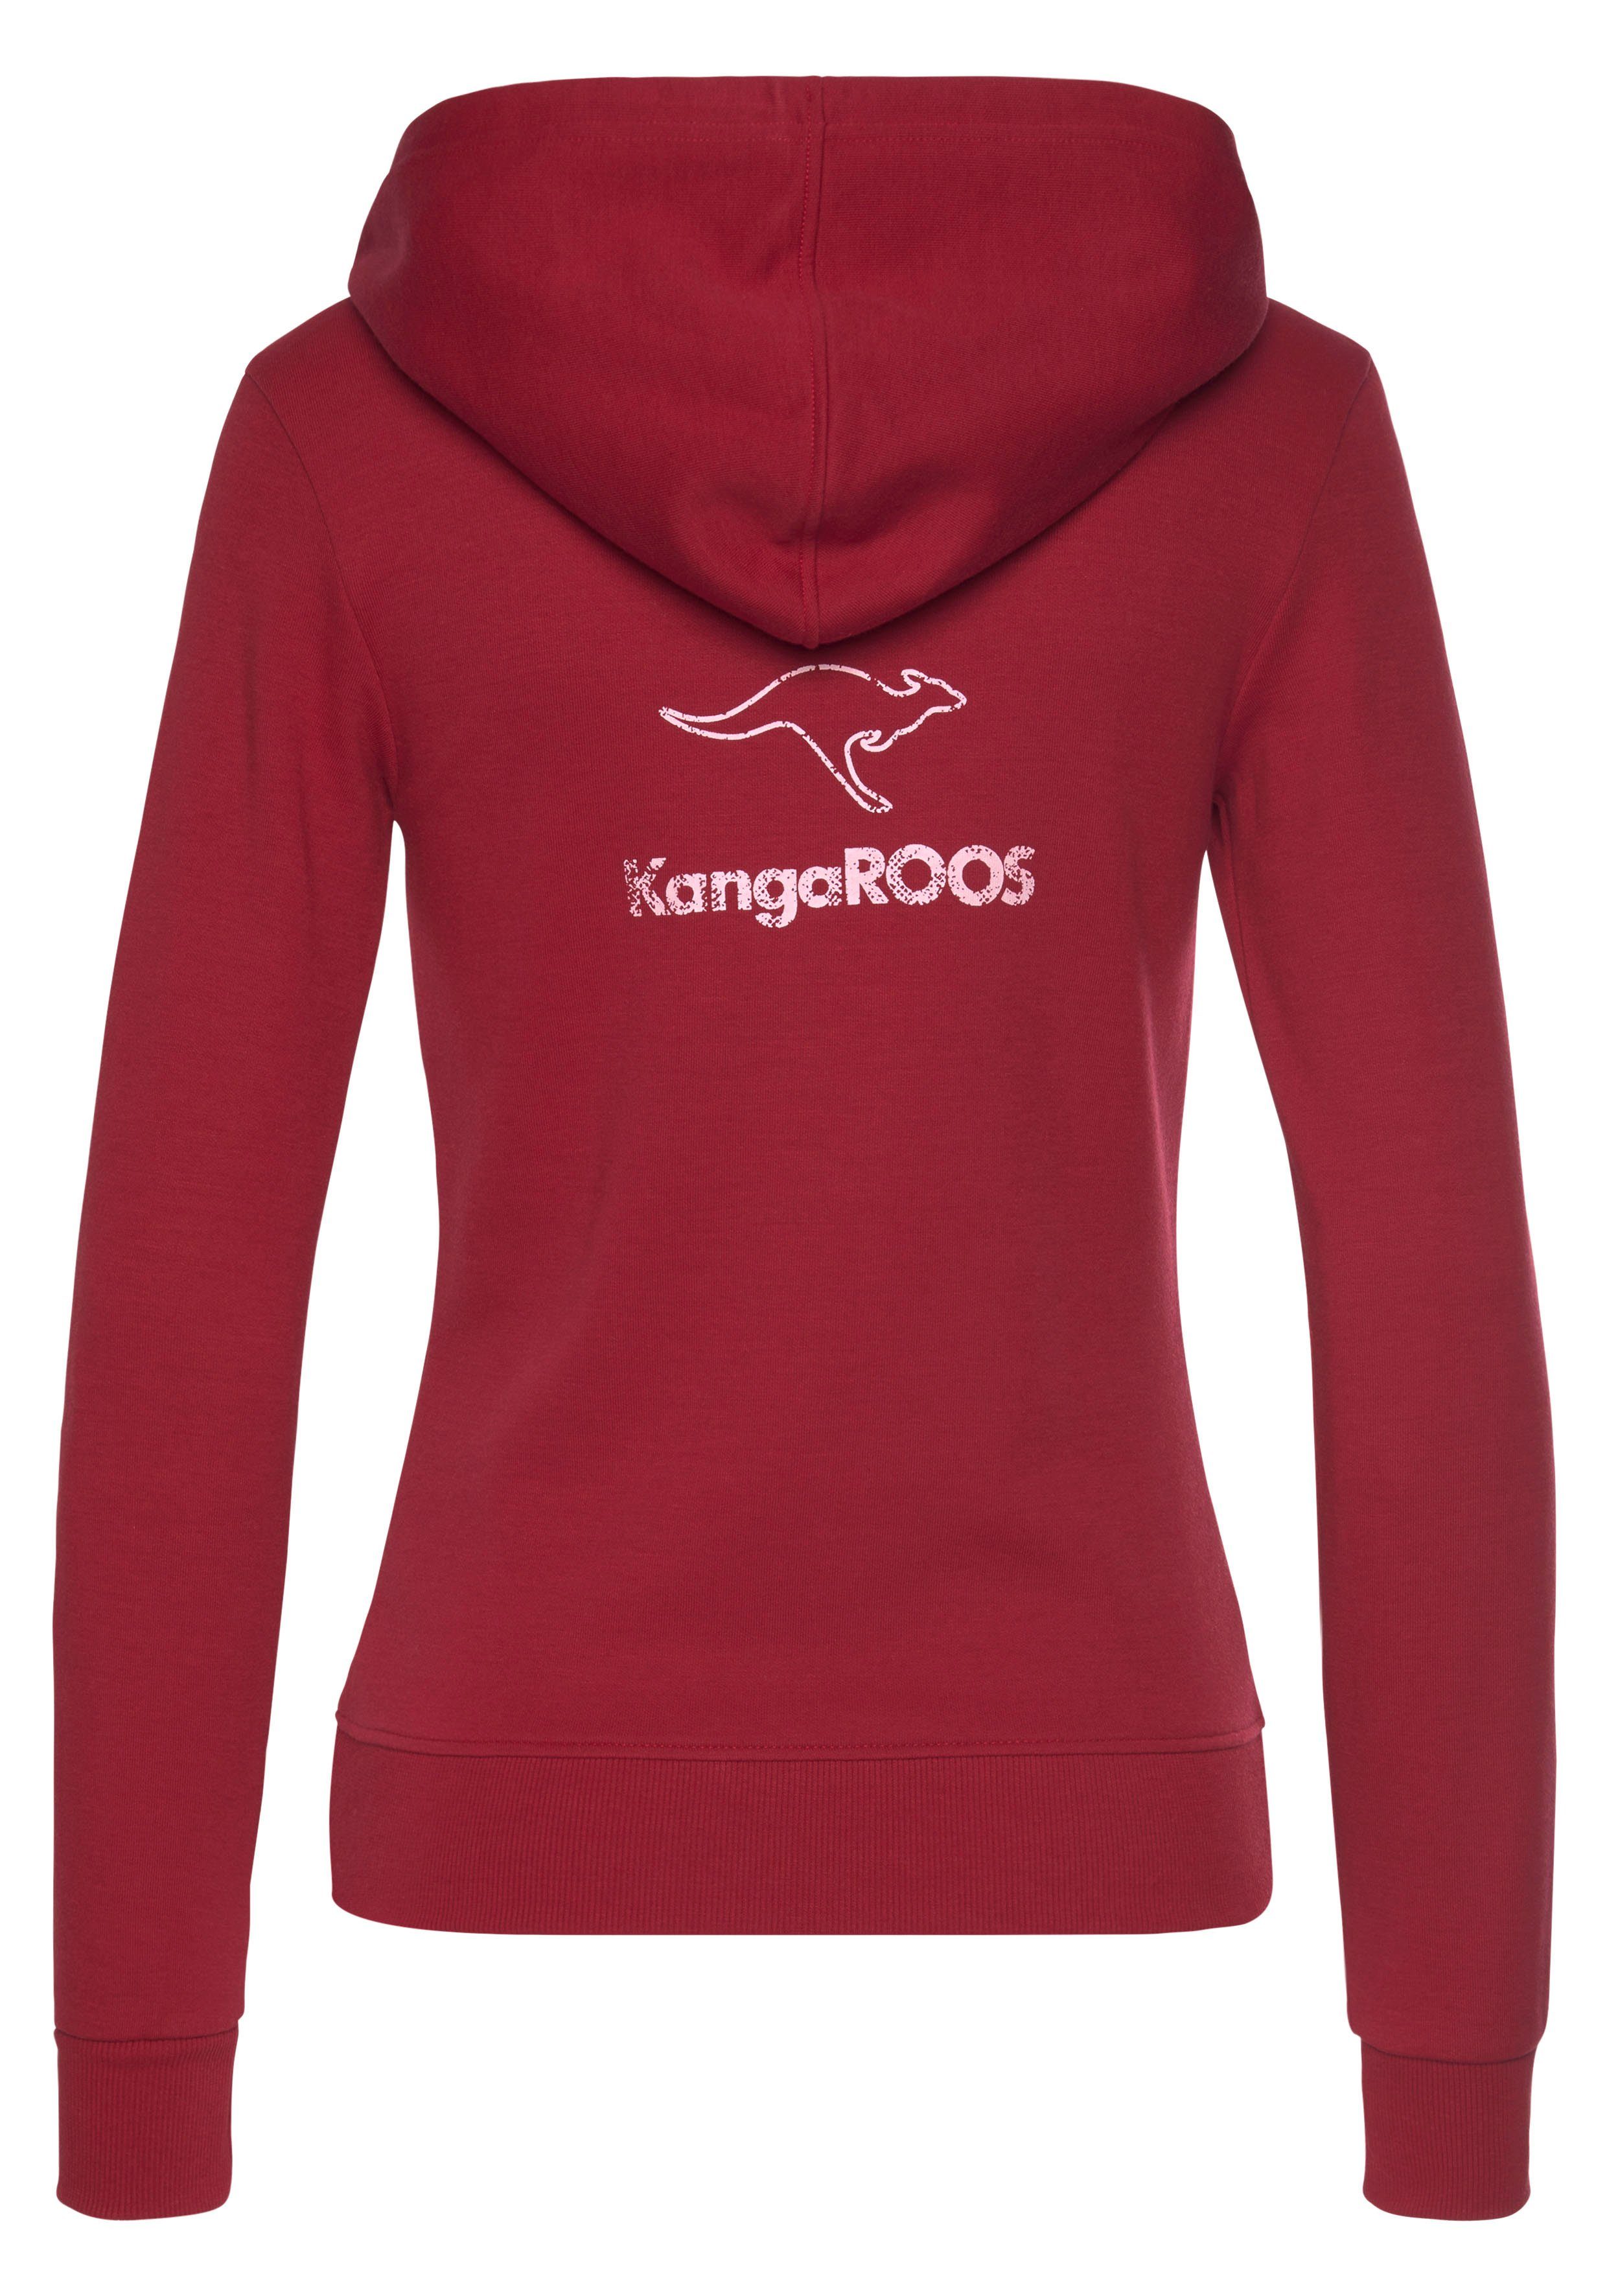 KangaROOS Sweatjacke mit dem großem Logodruck auf rot Rücken, Loungeanzug